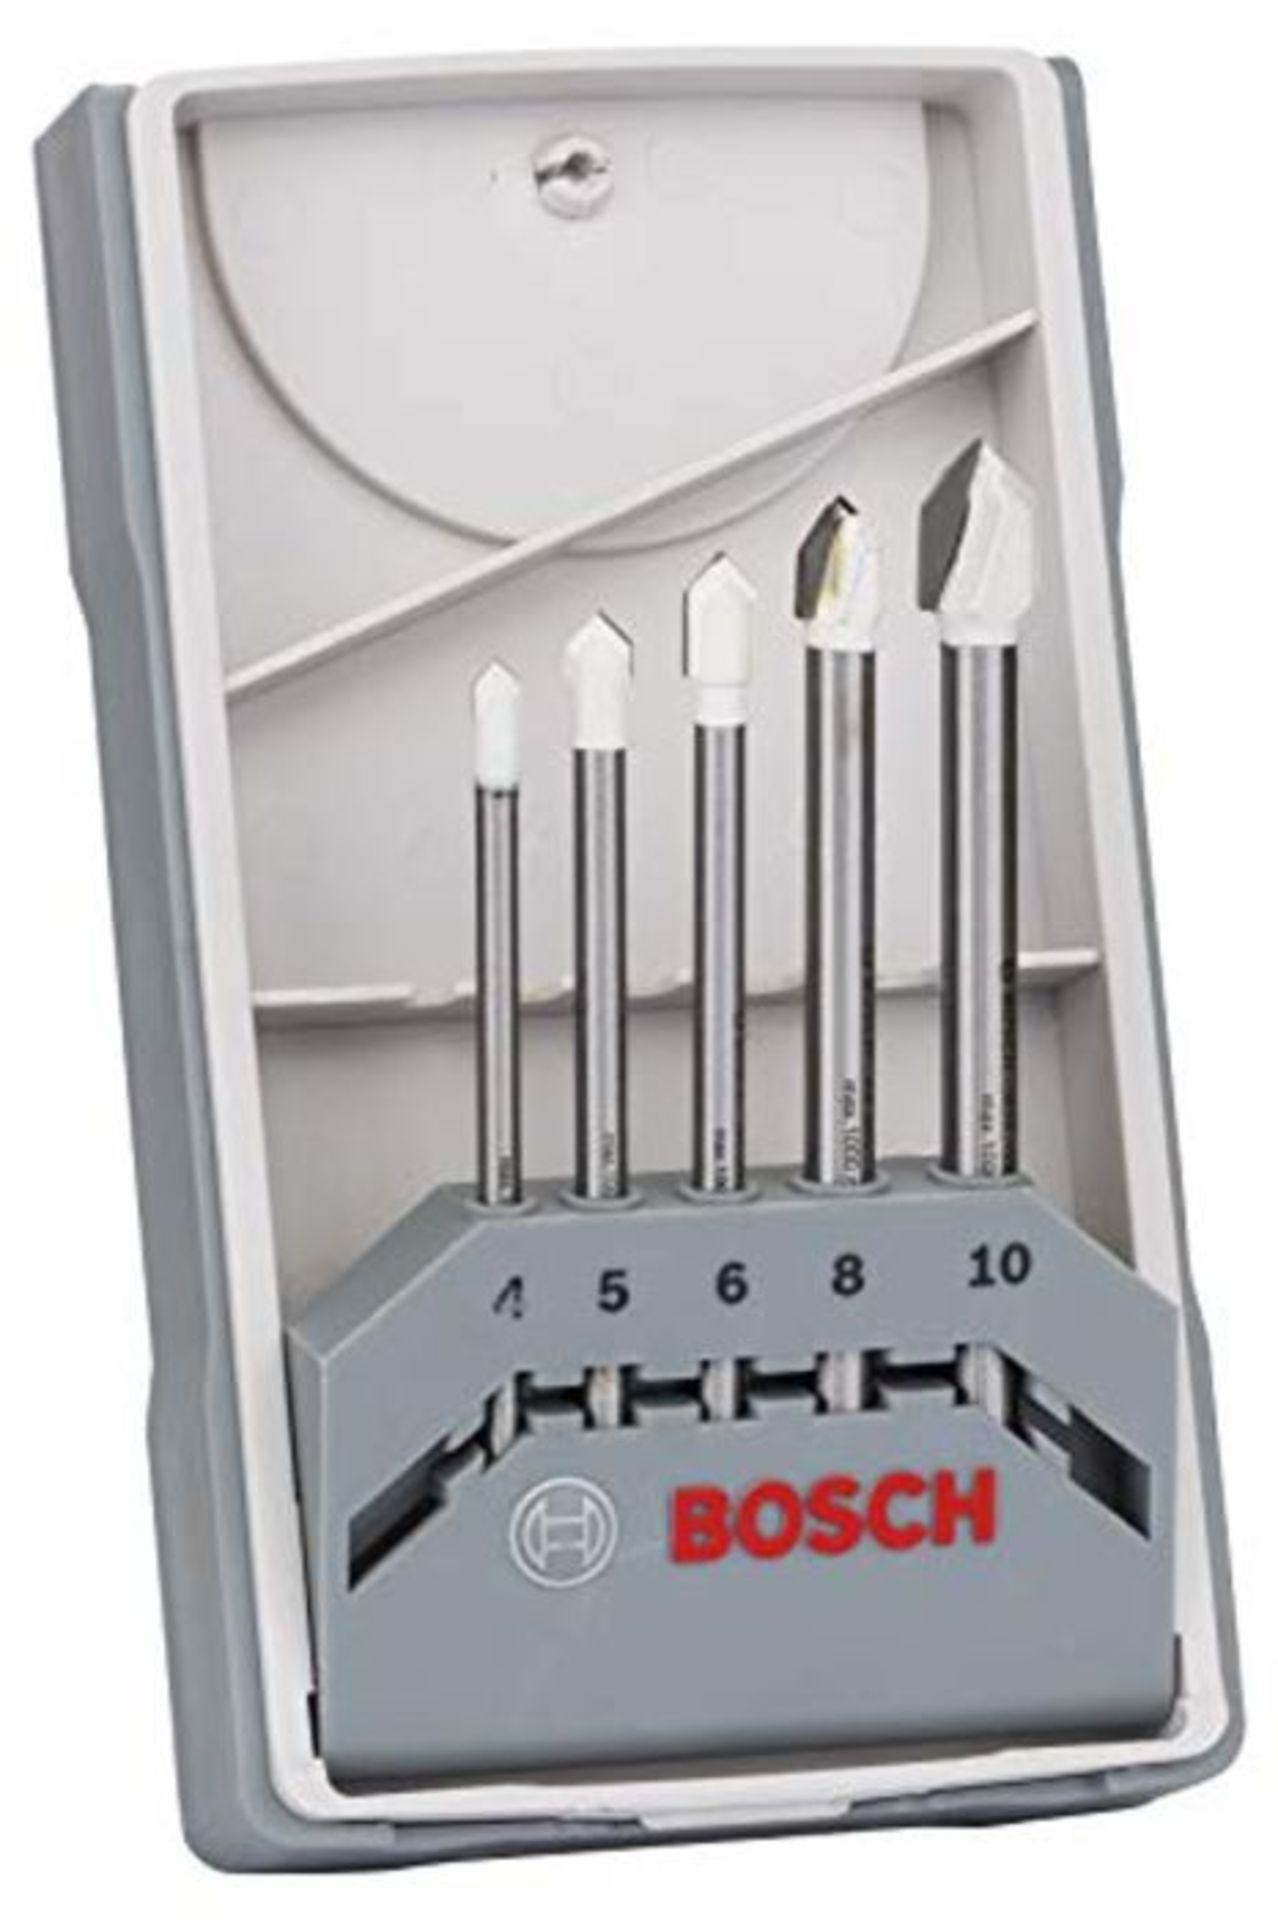 Bosch Professional 5 piÃ¨ces Jeu de forets pour carrelage Set CYL-9 SoftCeramic (pou